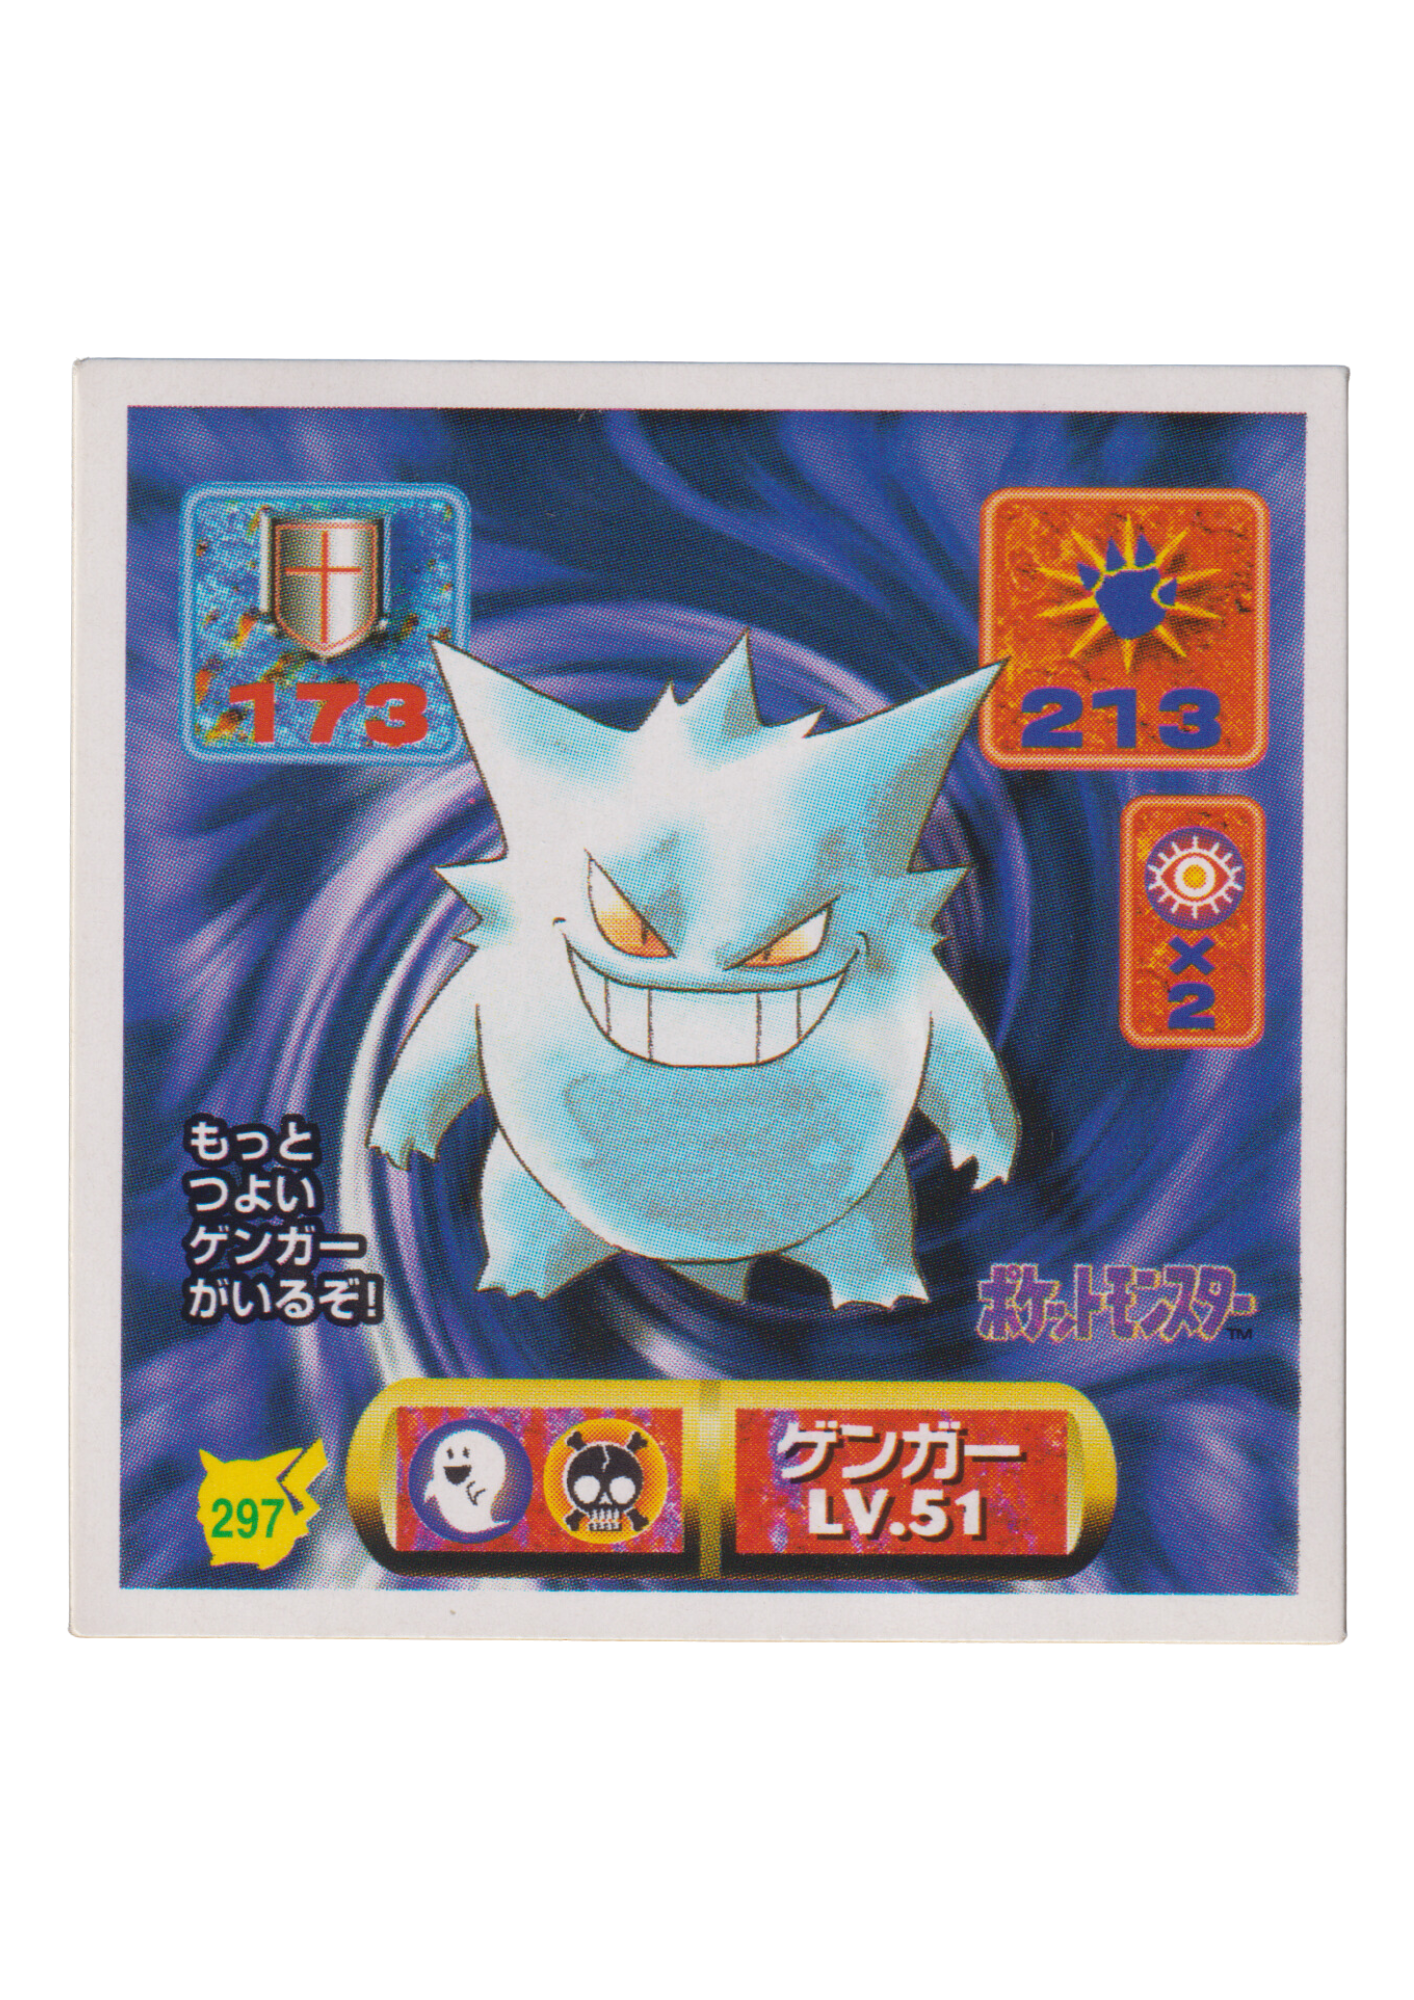 Adesivo Pokémon Amada (1997): 297 Gengar